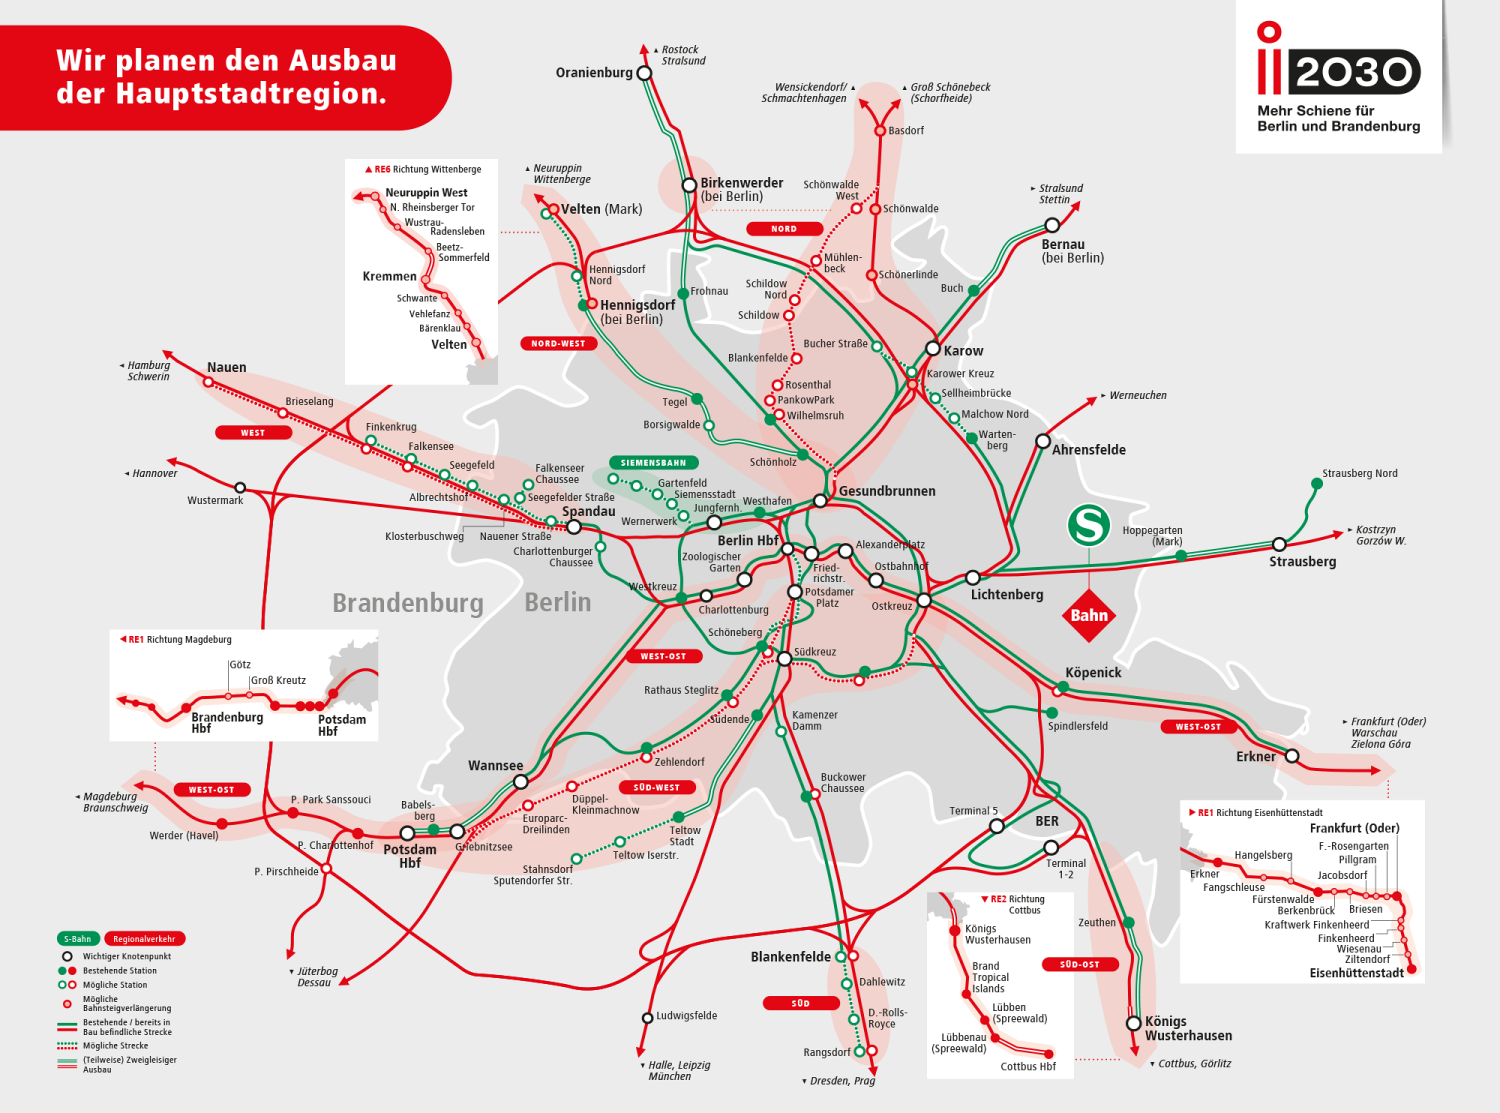 Bildvergrößerung: Projekt i2030: Infografik zu den Teilprojekten im Bahnnetz der Hauptstadtregion